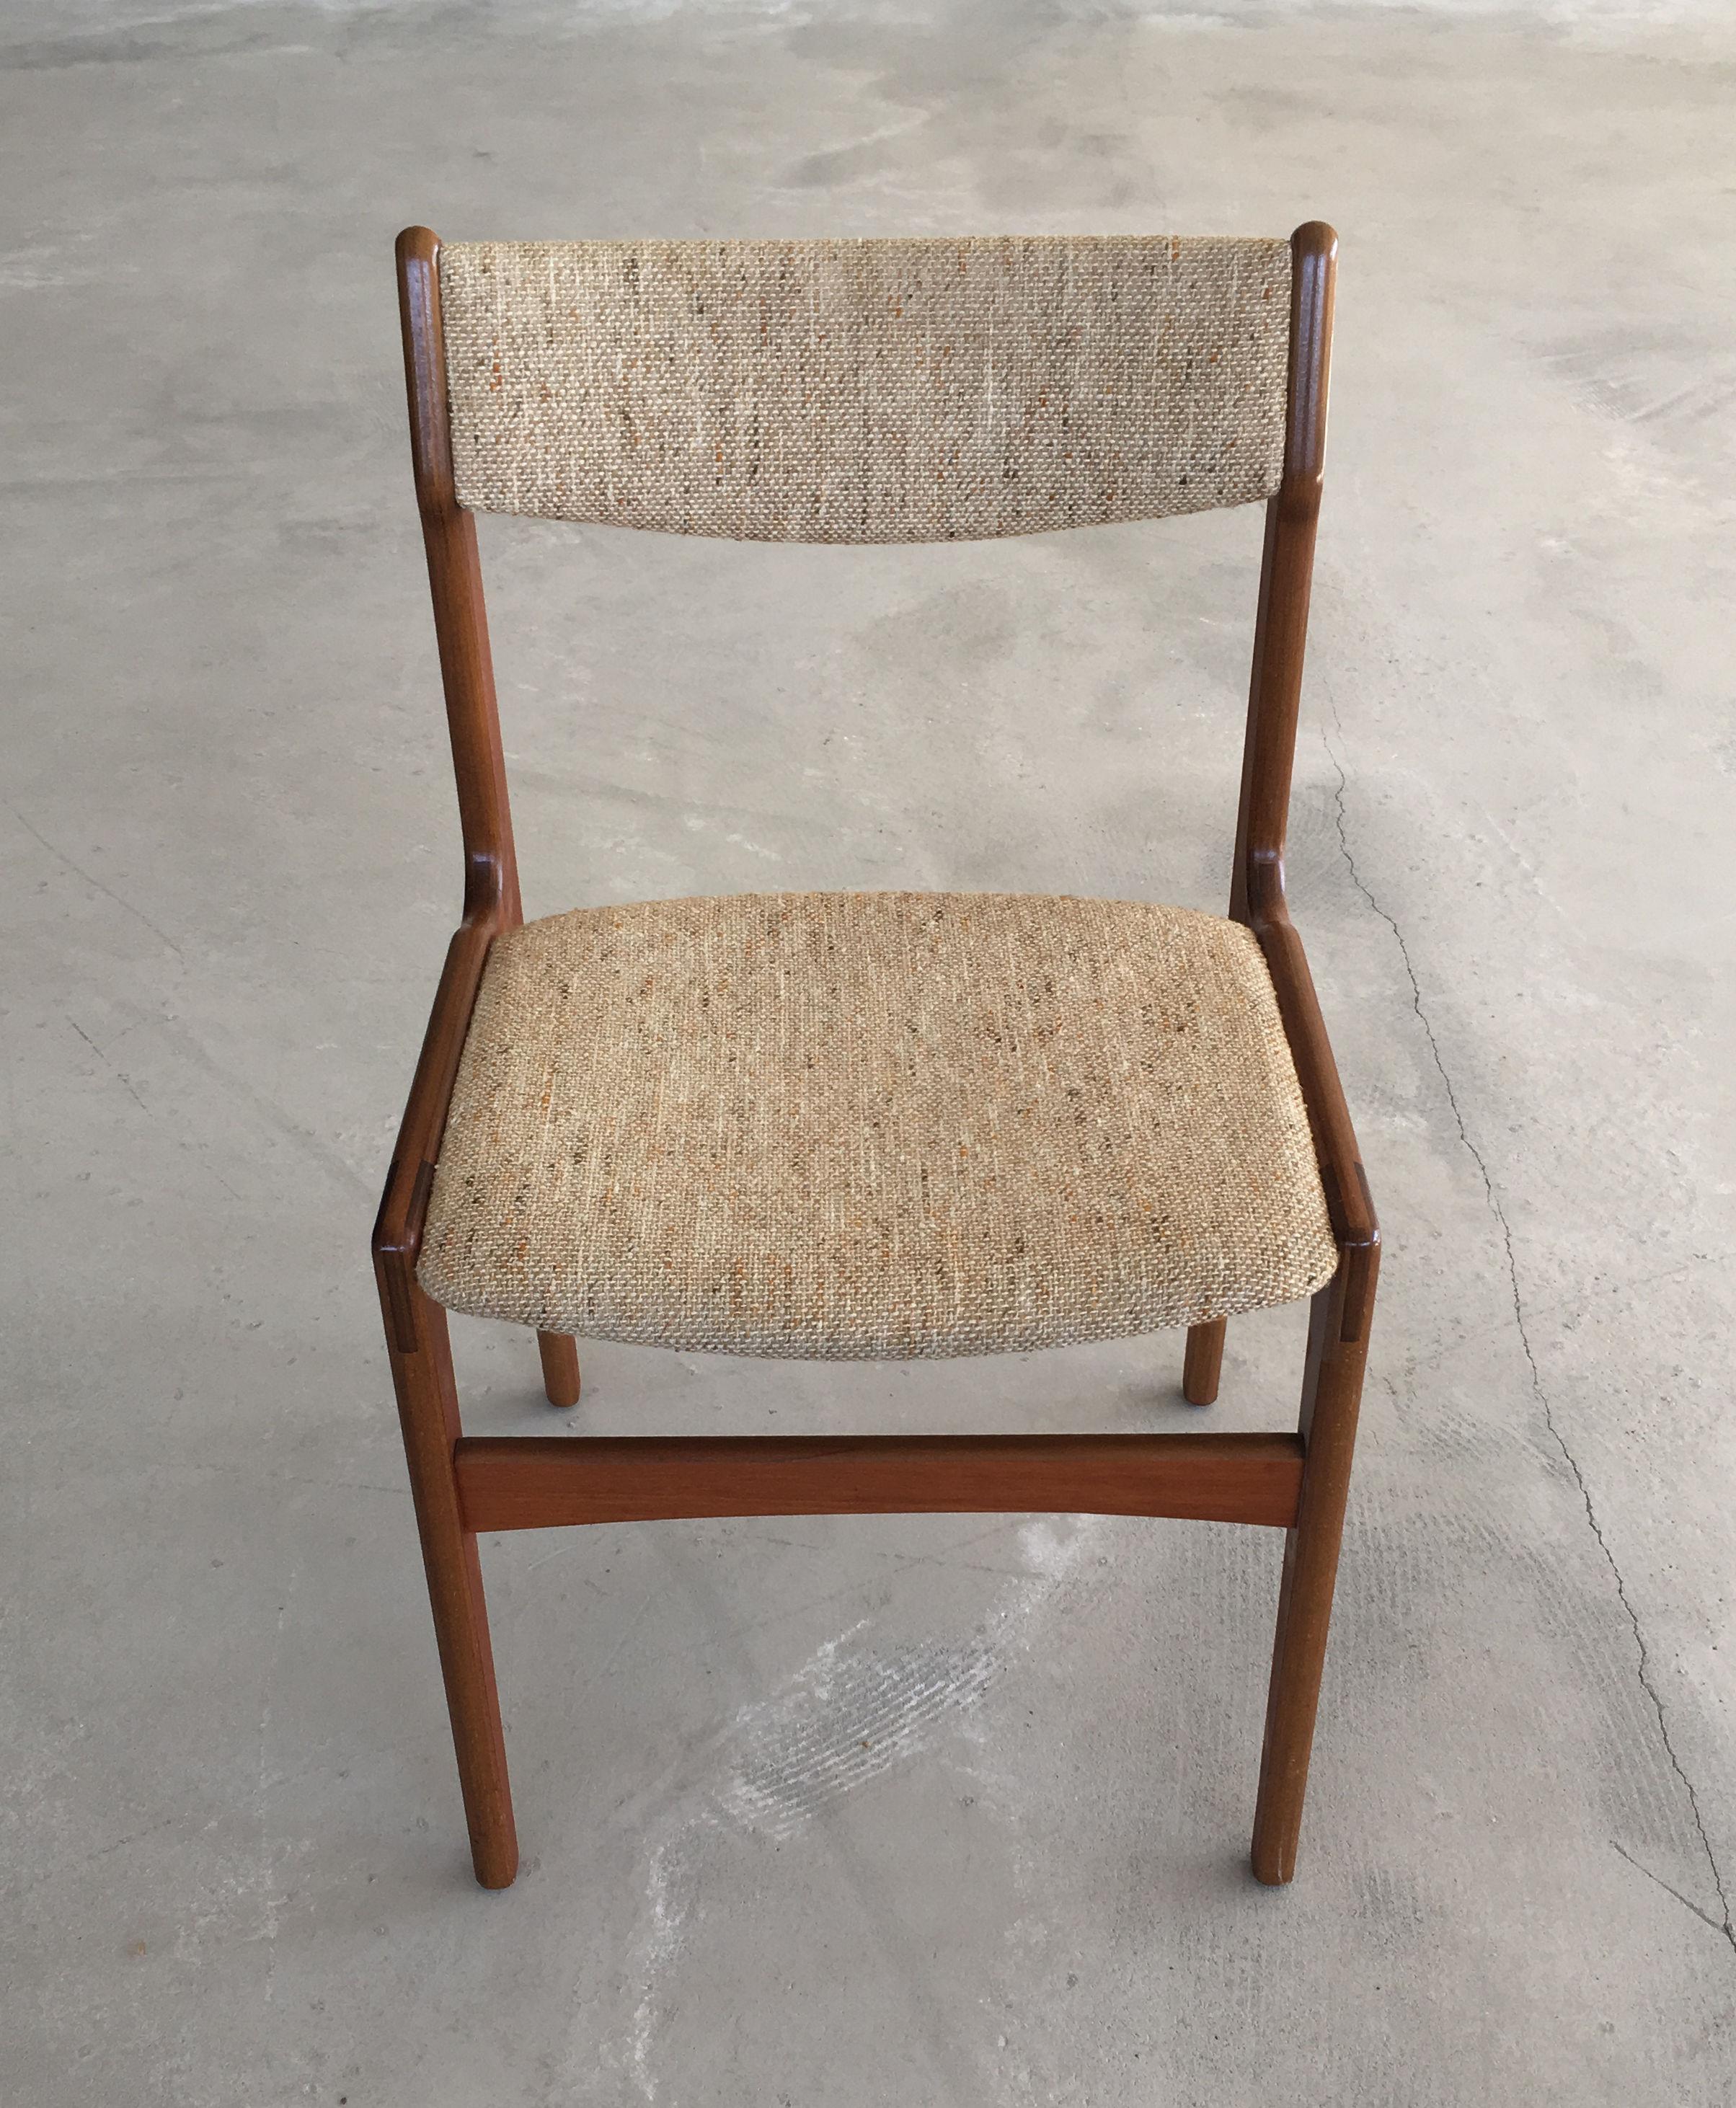 Ensemble de six chaises de salle à manger danoises en teck conçues par Erik Buch.

Les chaises sont, comme toutes les chaises d'Erik Buchs, confortables et en très bon état.

Les chaises ont été restaurées et remises en état par notre ébéniste